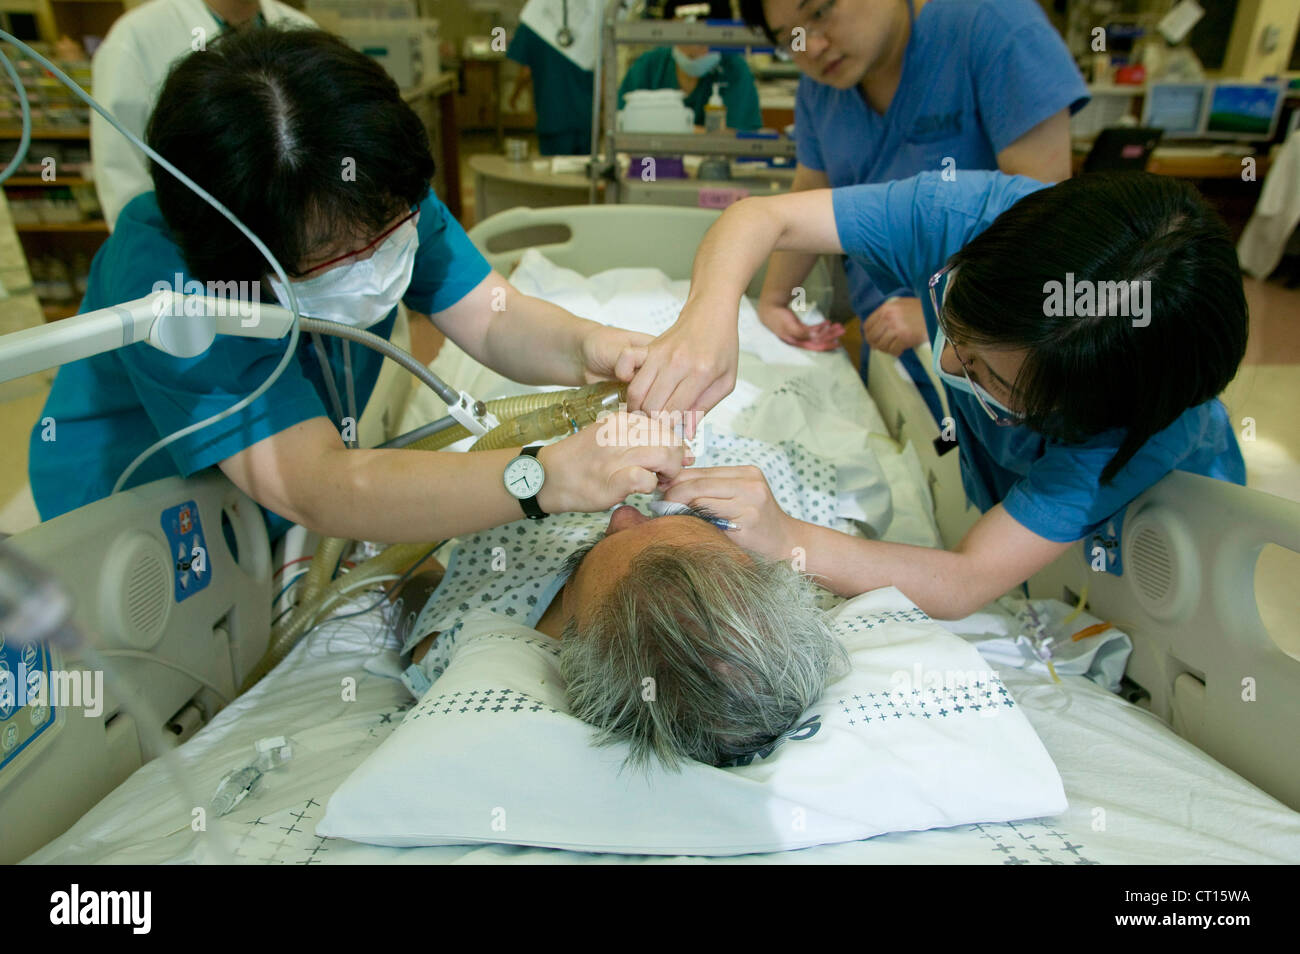 Los anestesistas administran anestesia general gas a un paciente en la unidad de cuidados intensivos. Foto de stock